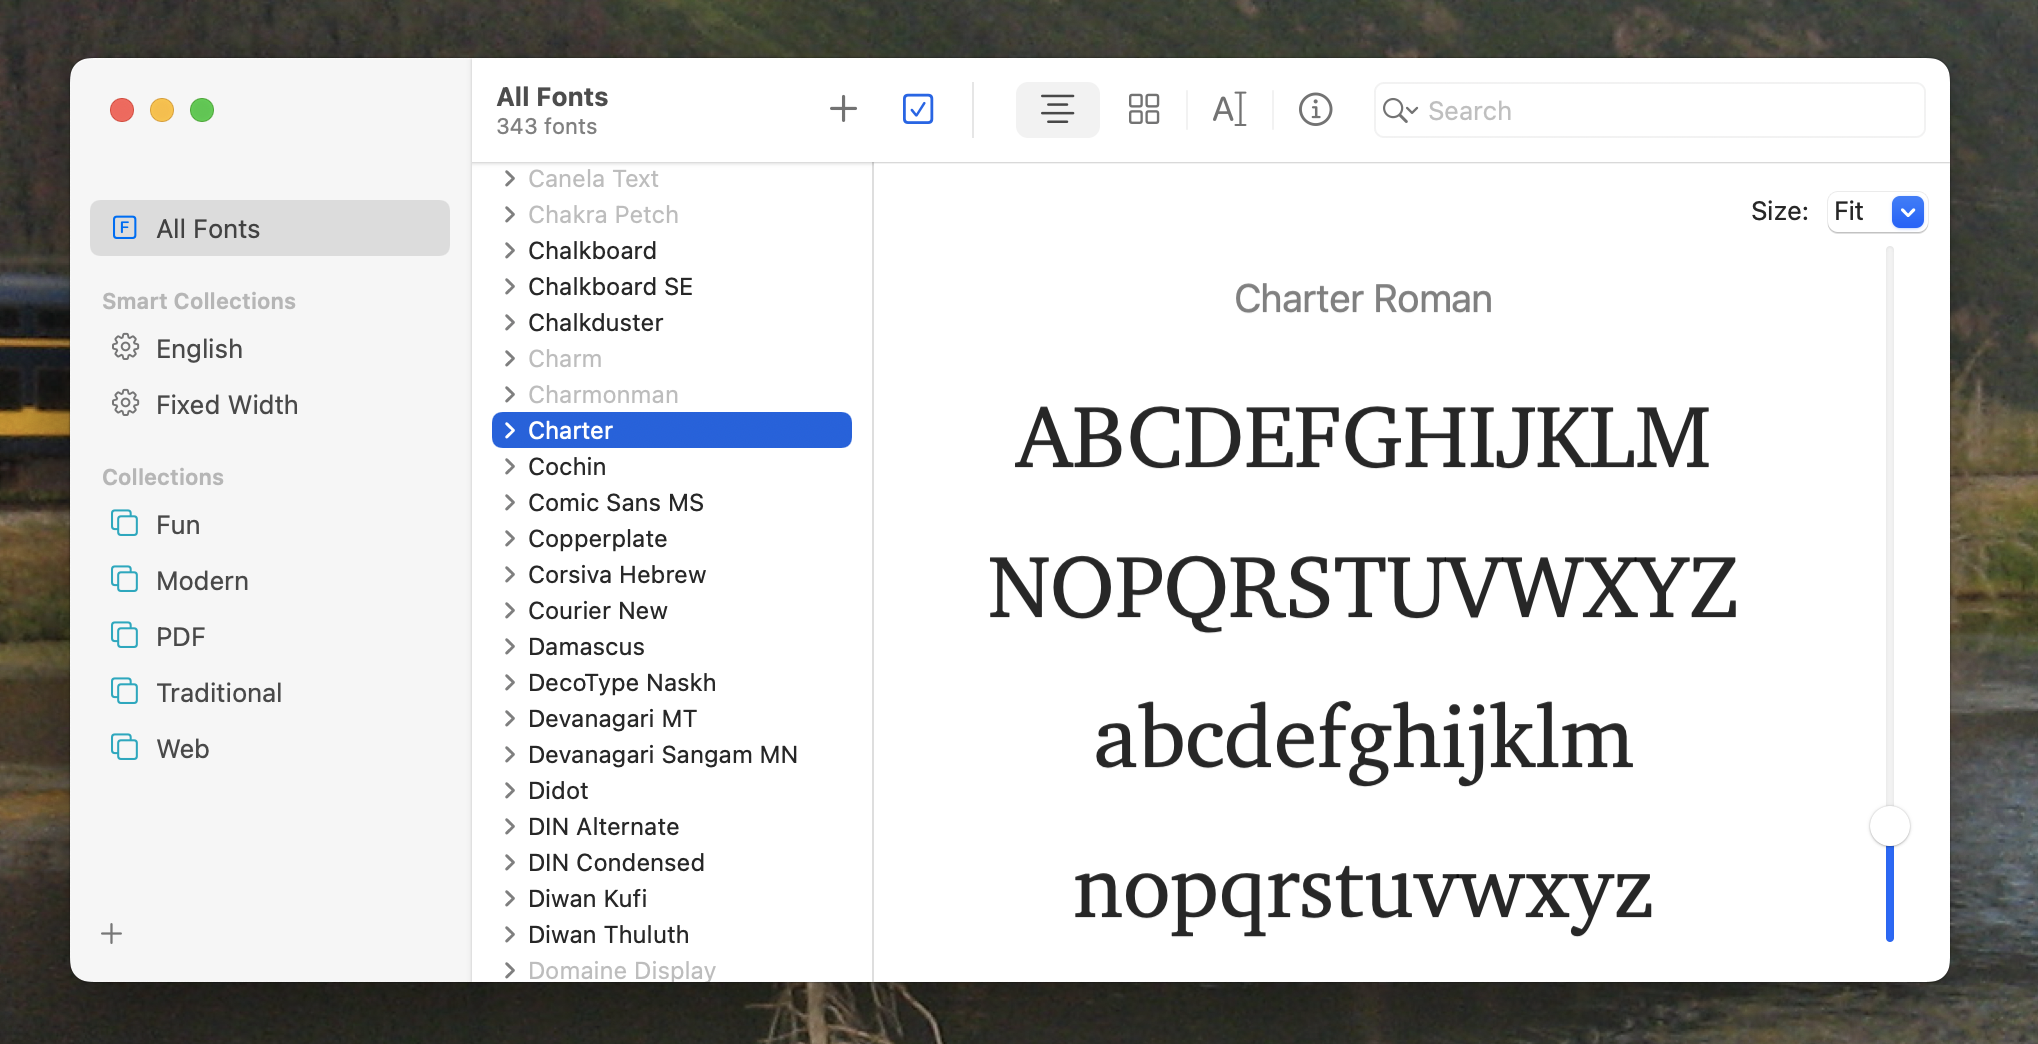 Libro tipográfico en macOS, con las fuentes enumeradas a la izquierda y una vista previa de ellas en el panel central